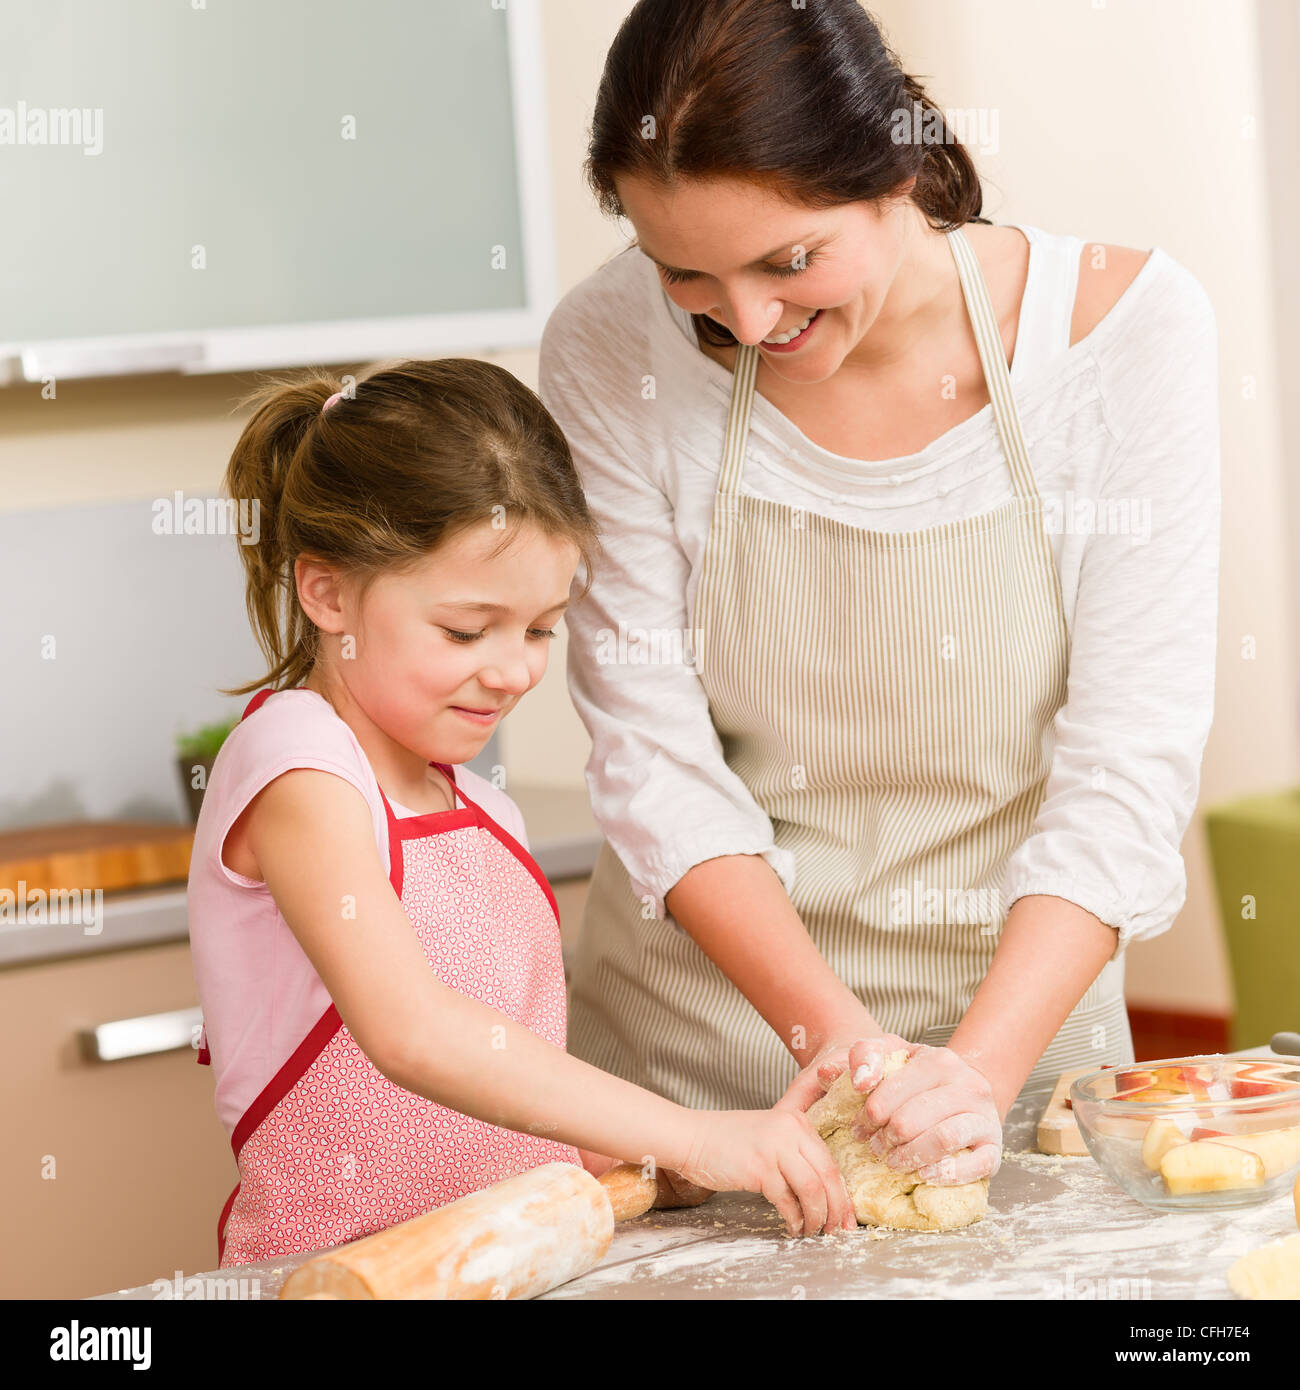 Пироги готовит мама. Мама с дочкой печет. Печем с мамой. Дети пекут. Мама с ребенком пекут торт.